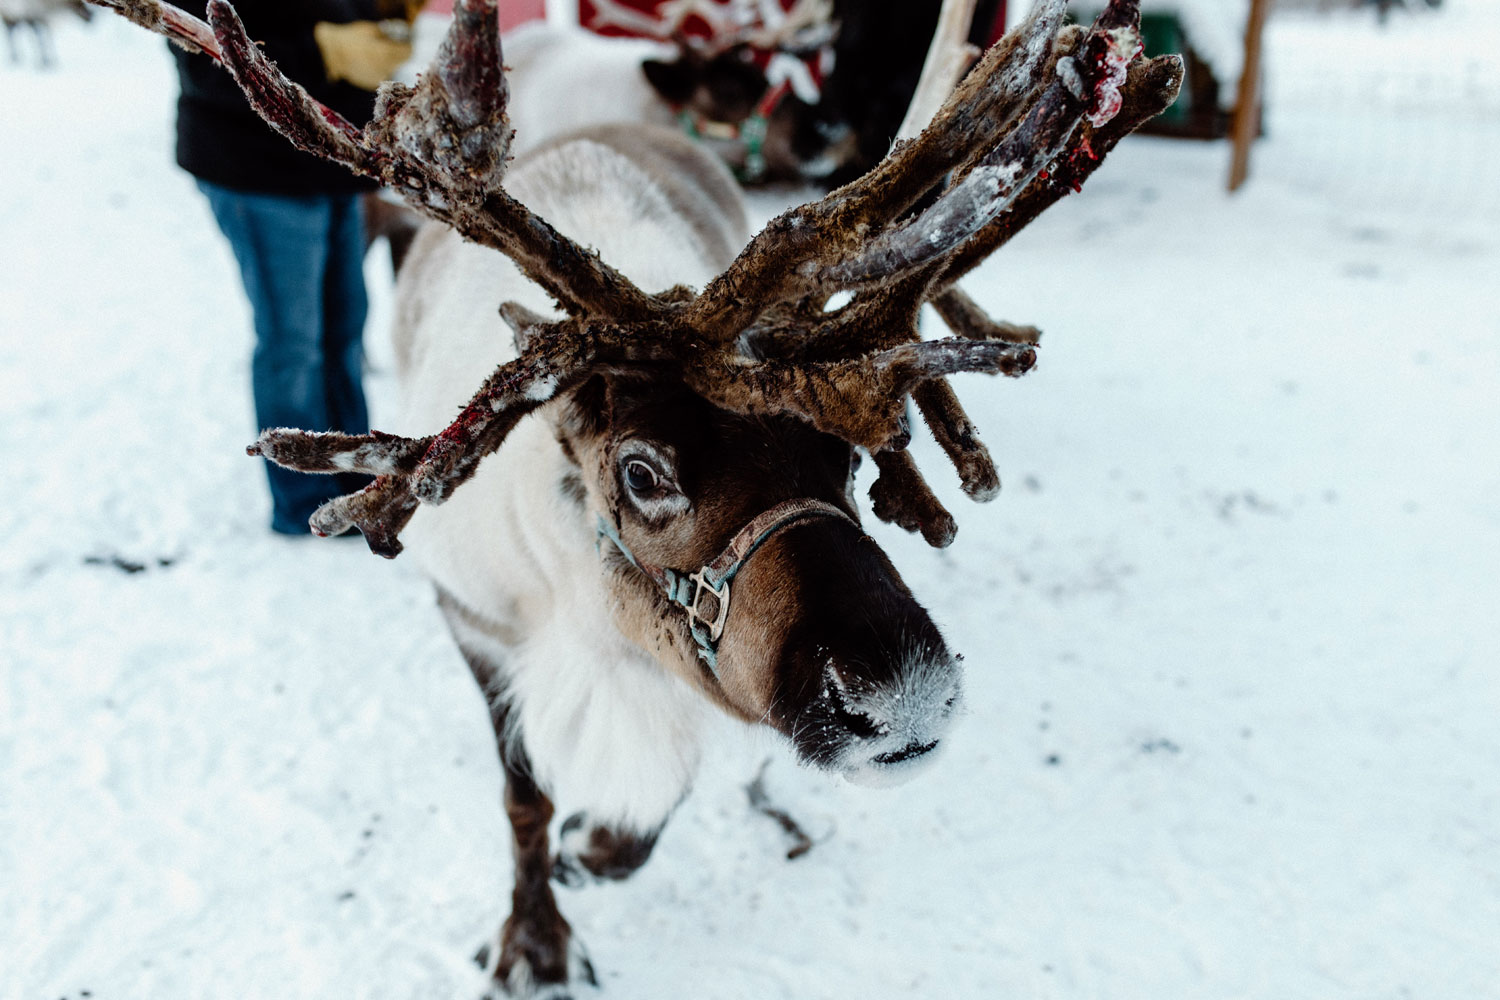 Small Town Christmas - North Pole, Alaska